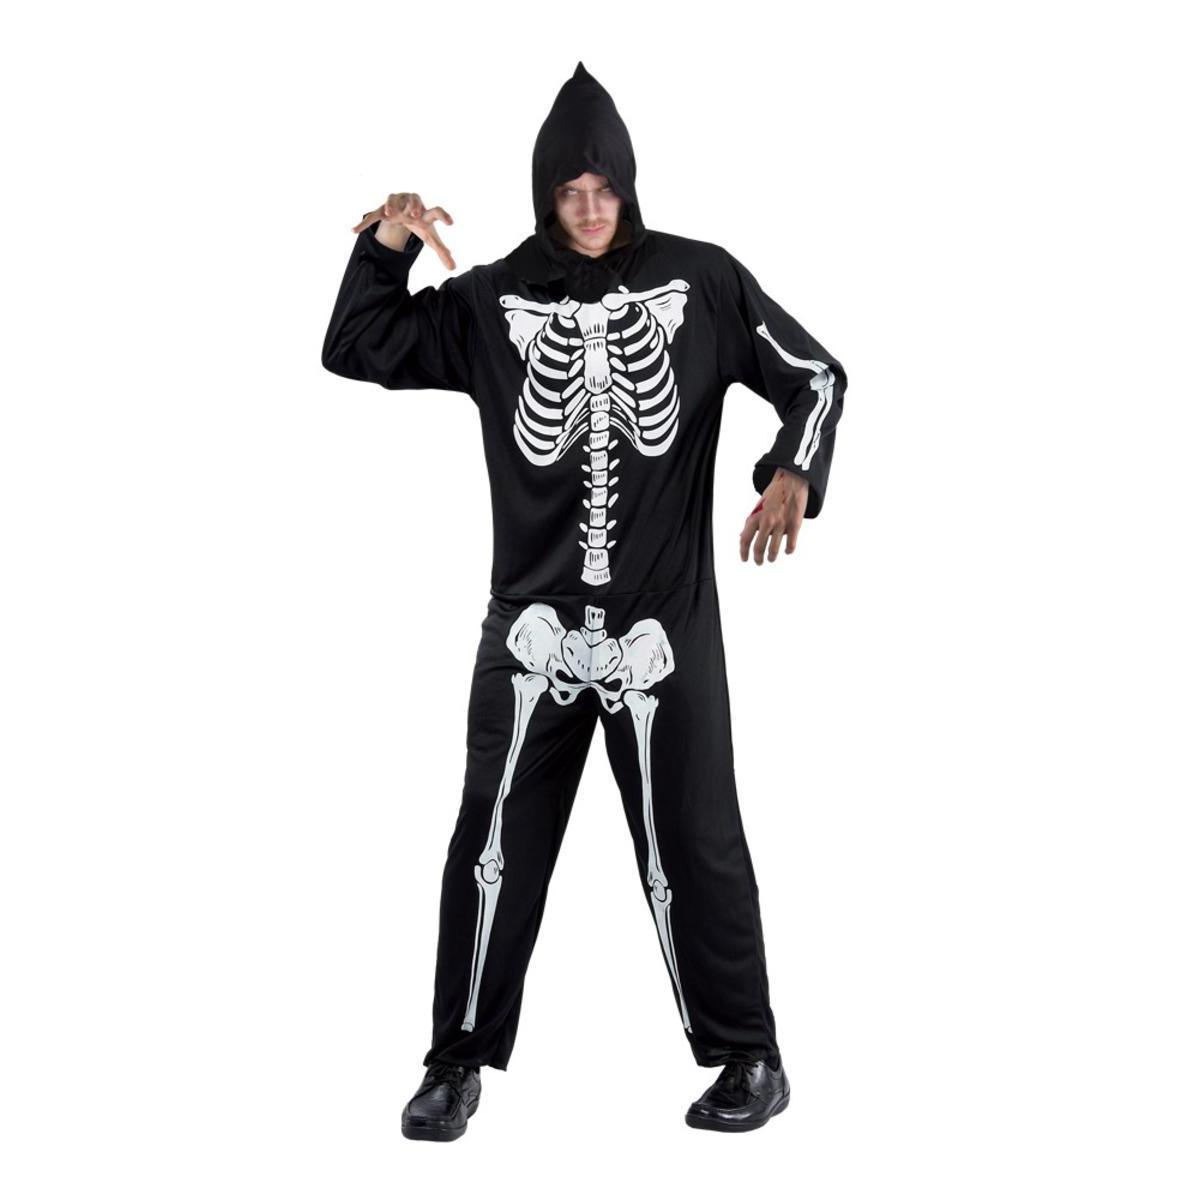 Costume-combinaison de squelette - Taille adulte unique - L 38 x H 2 x l 24 cm - Noir - PTIT CLOWN